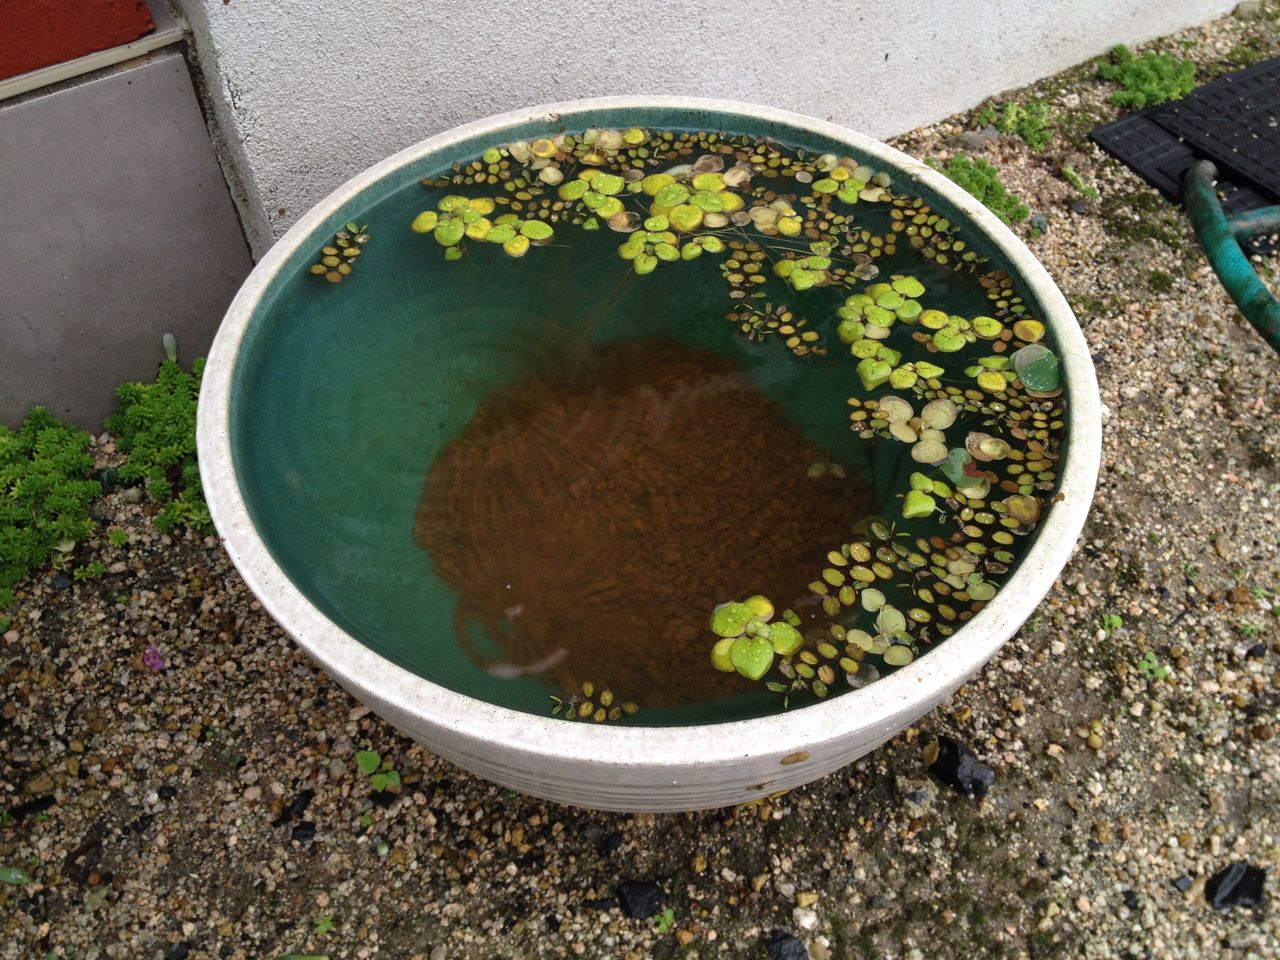 メダカが全滅した後の睡蓮鉢の観察 水槽にやったことを忘れないように書いておくブログ